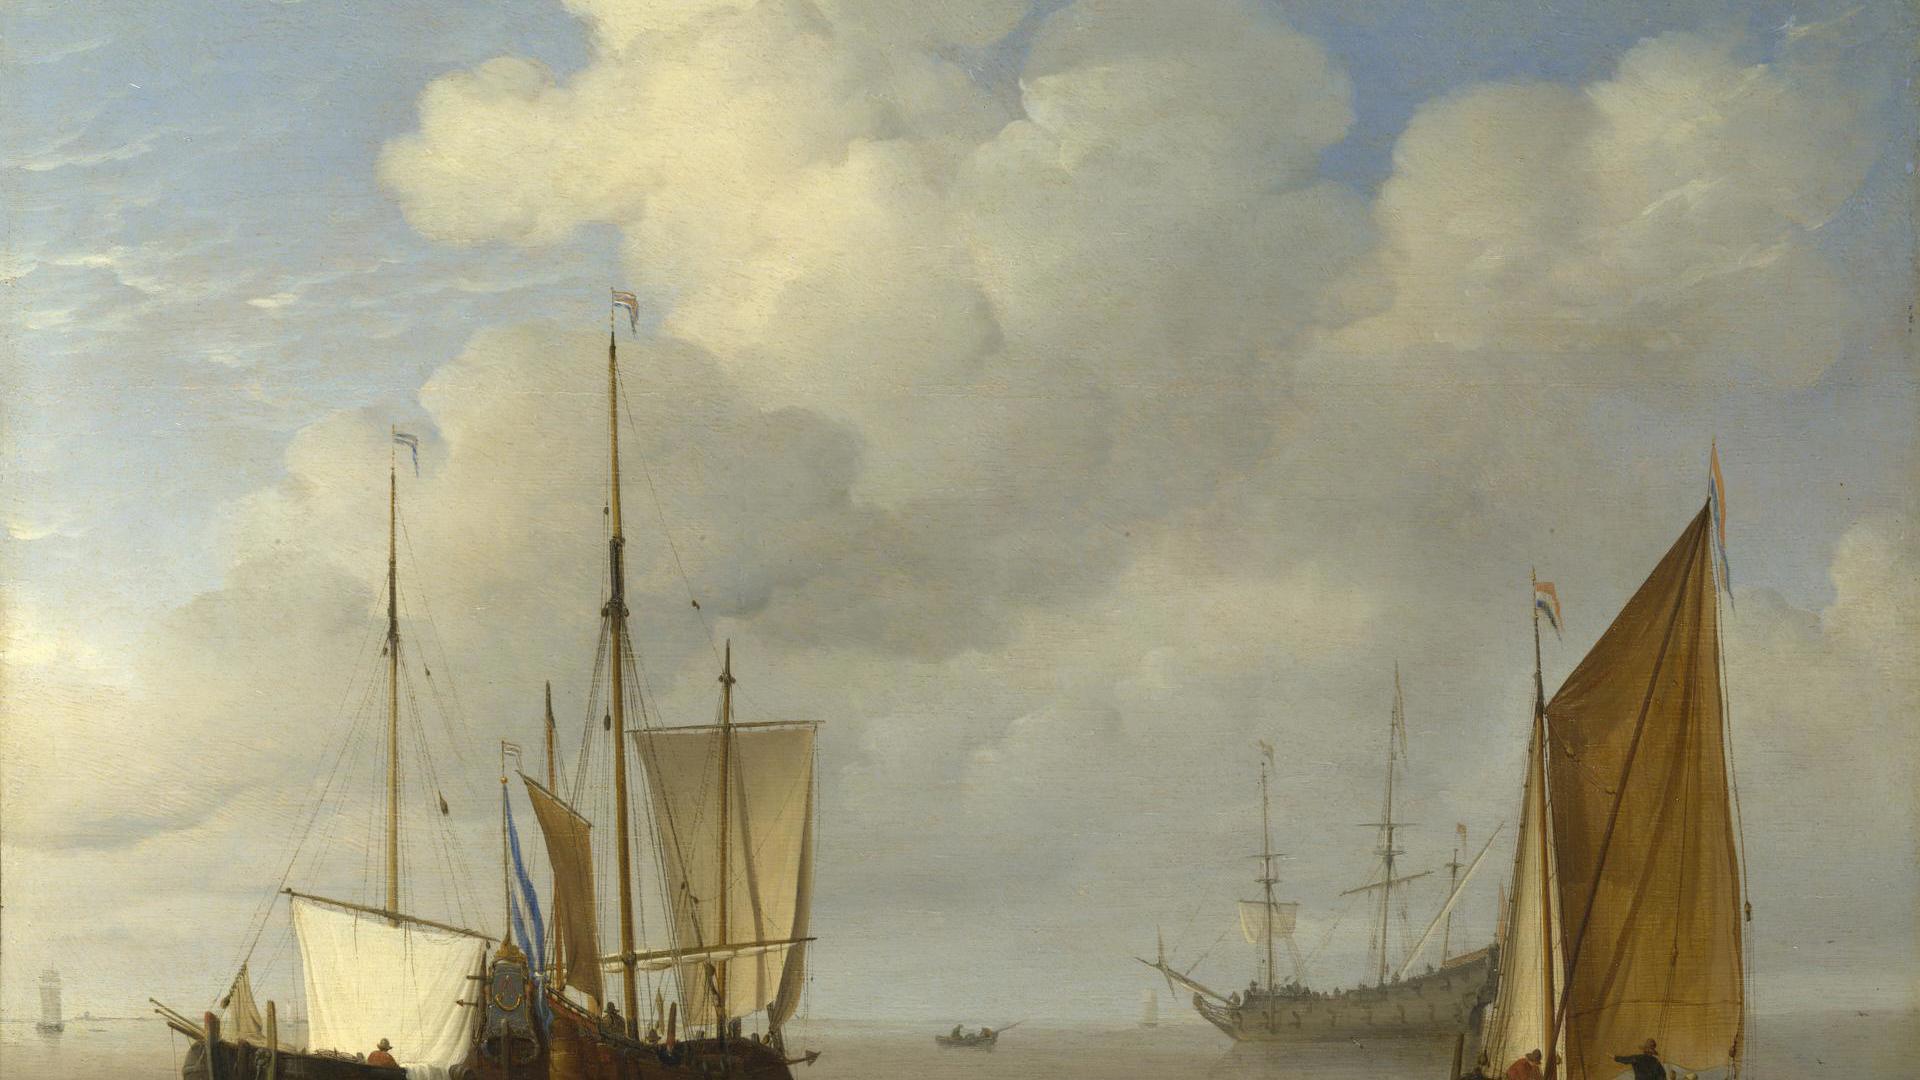 Dutch Ships in a Calm by Willem van de Velde